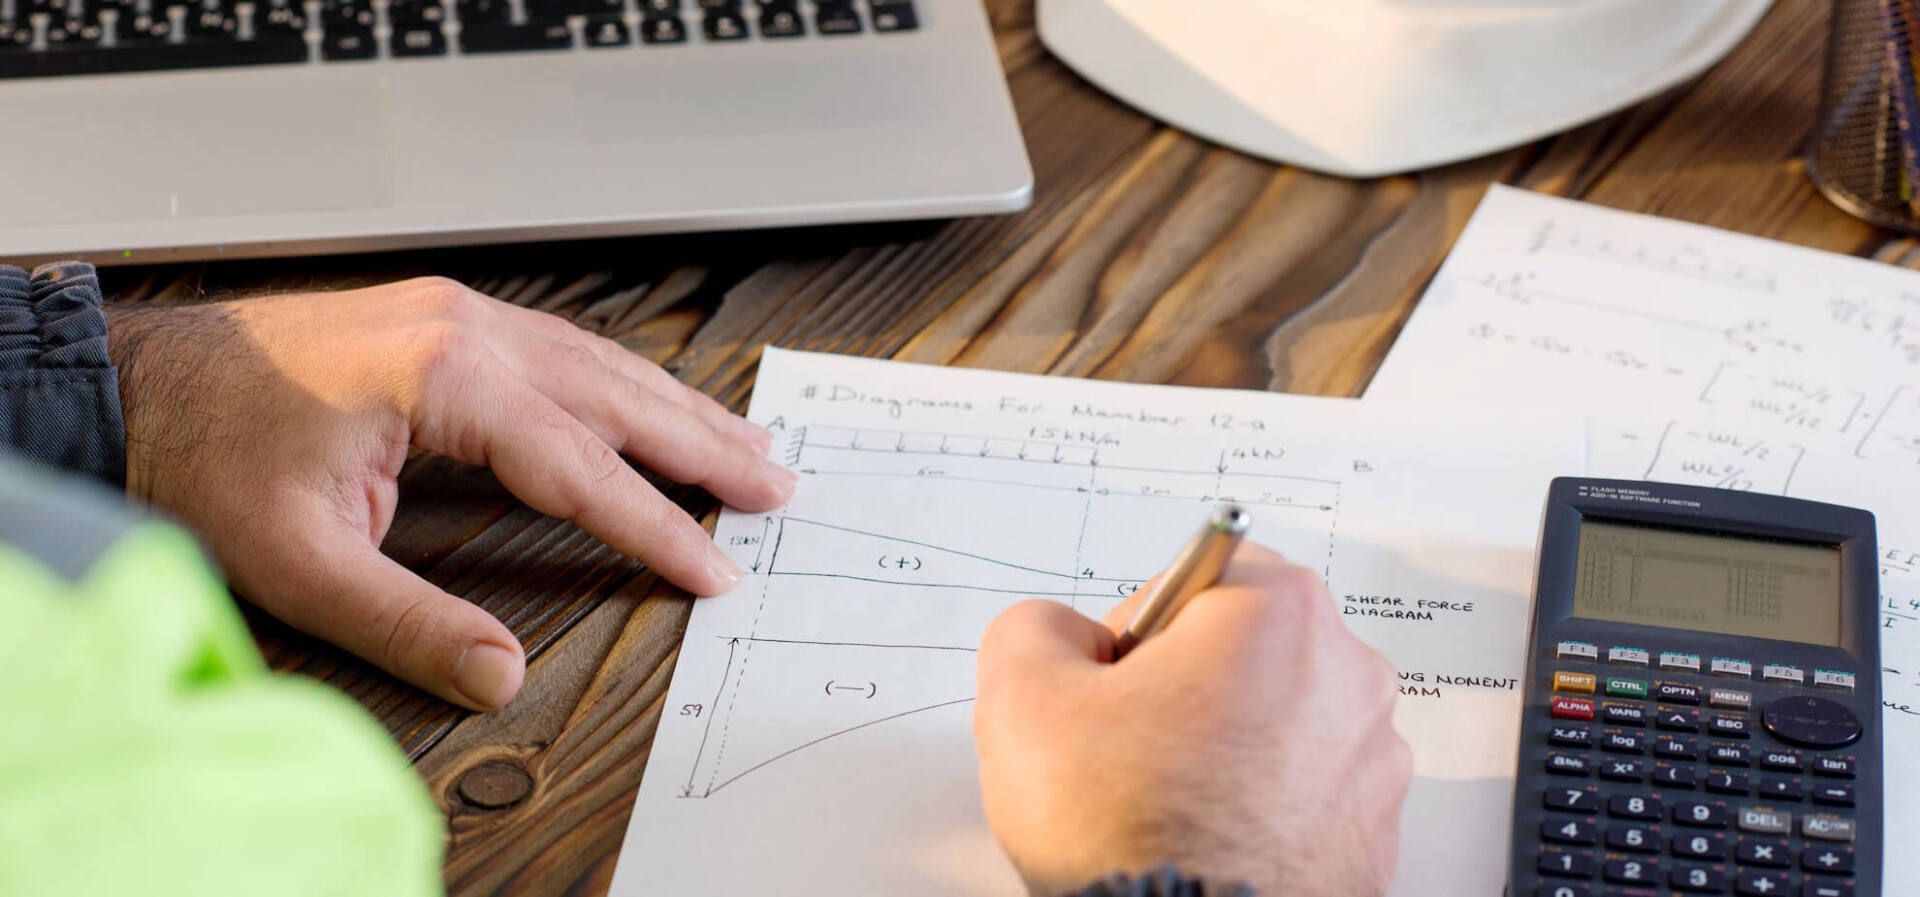 Un homme est assis à une table en bois et utilise une calculatrice et écrit sur un morceau de papier.